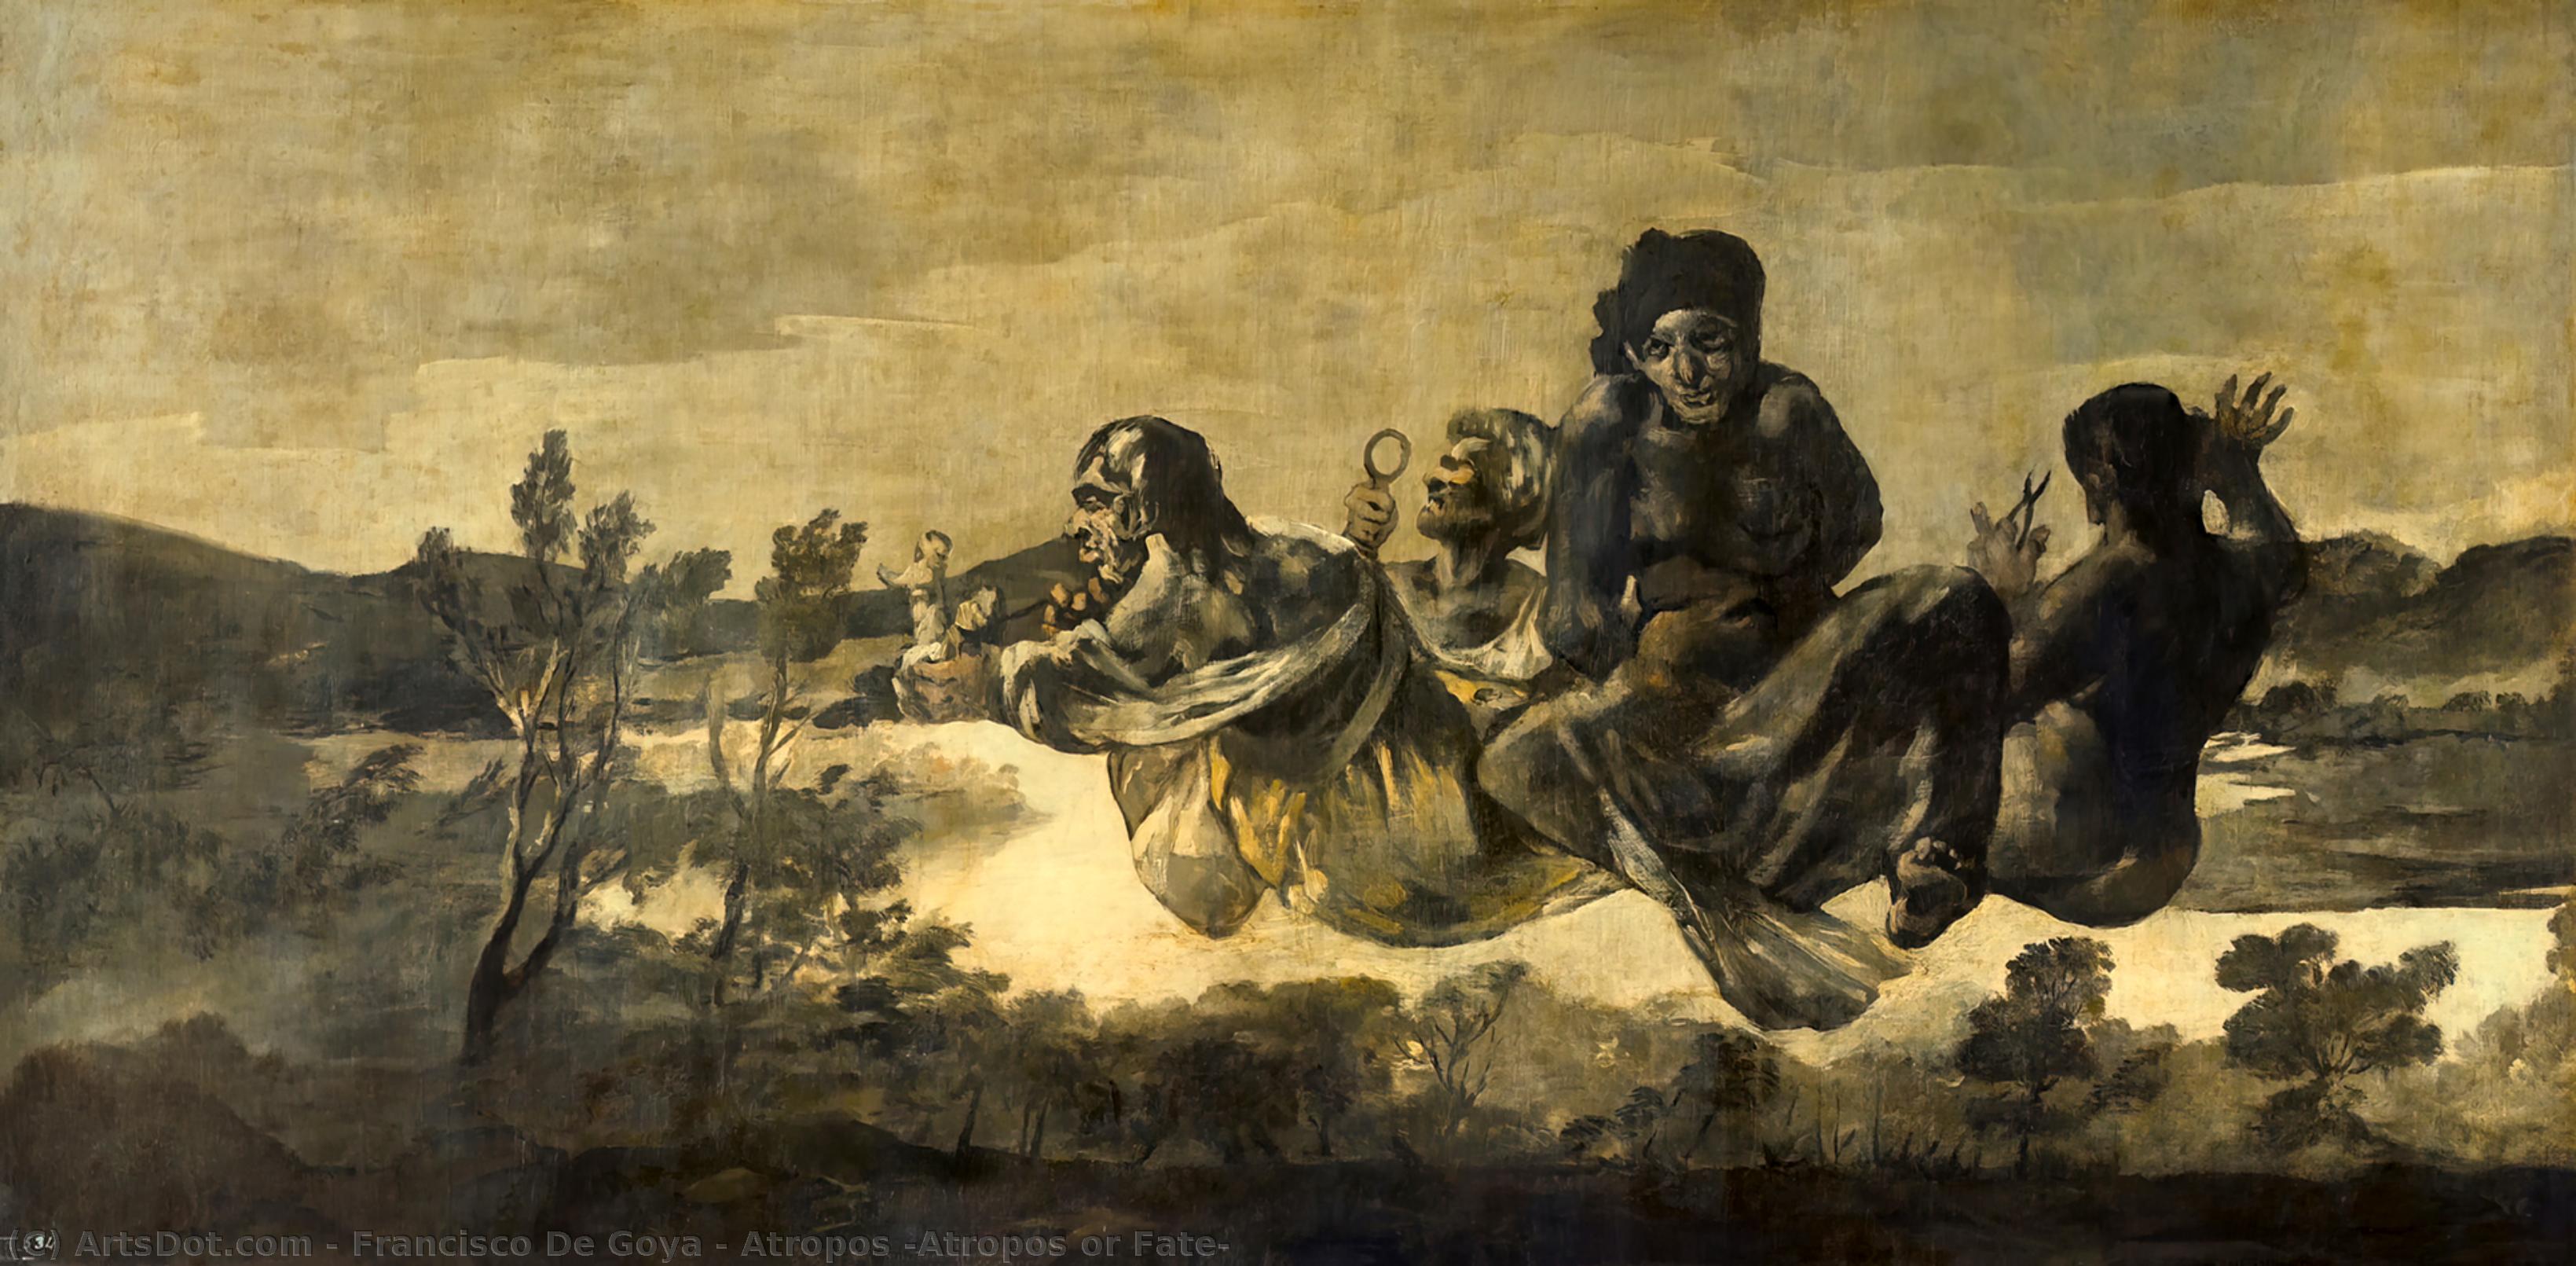 WikiOO.org - Енциклопедія образотворчого мистецтва - Живопис, Картини
 Francisco De Goya - Atropos (Atropos or Fate)